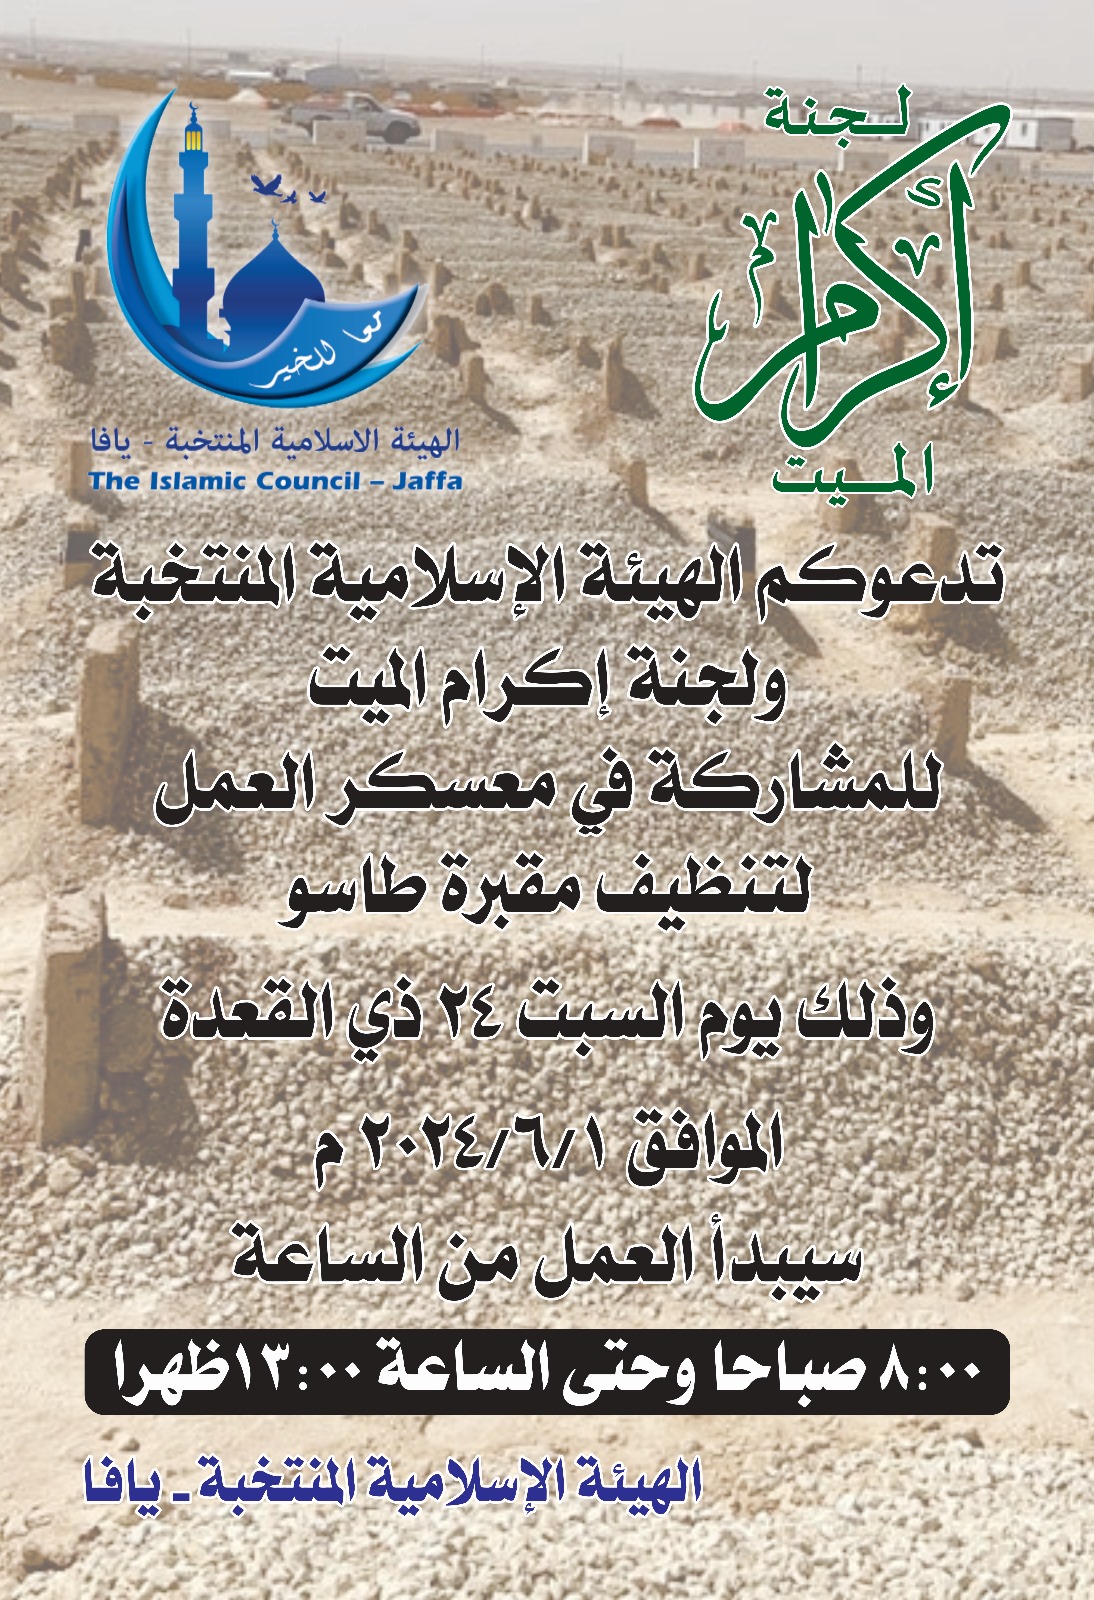 السبت: معسكر عمل لتنظيف مقبرة طاسو في يافا ودعوات للمشاركة 